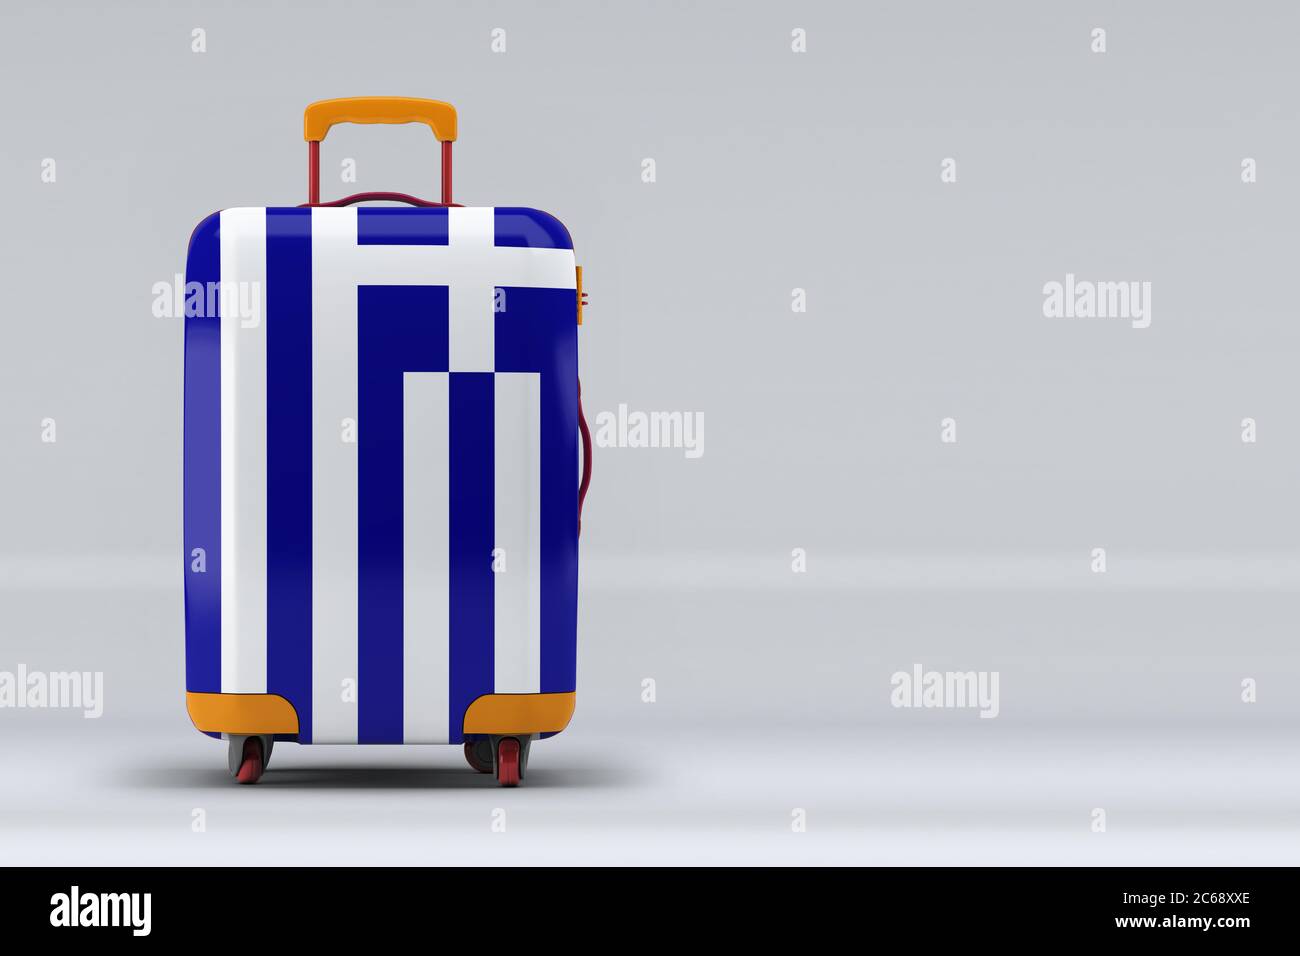 Griechenland Nationalflagge auf einem stilvollen Koffer auf farbigem Hintergrund. Leerzeichen für Text. Internationales Reise- und Tourismuskonzept. 3D-Rendering. Stockfoto